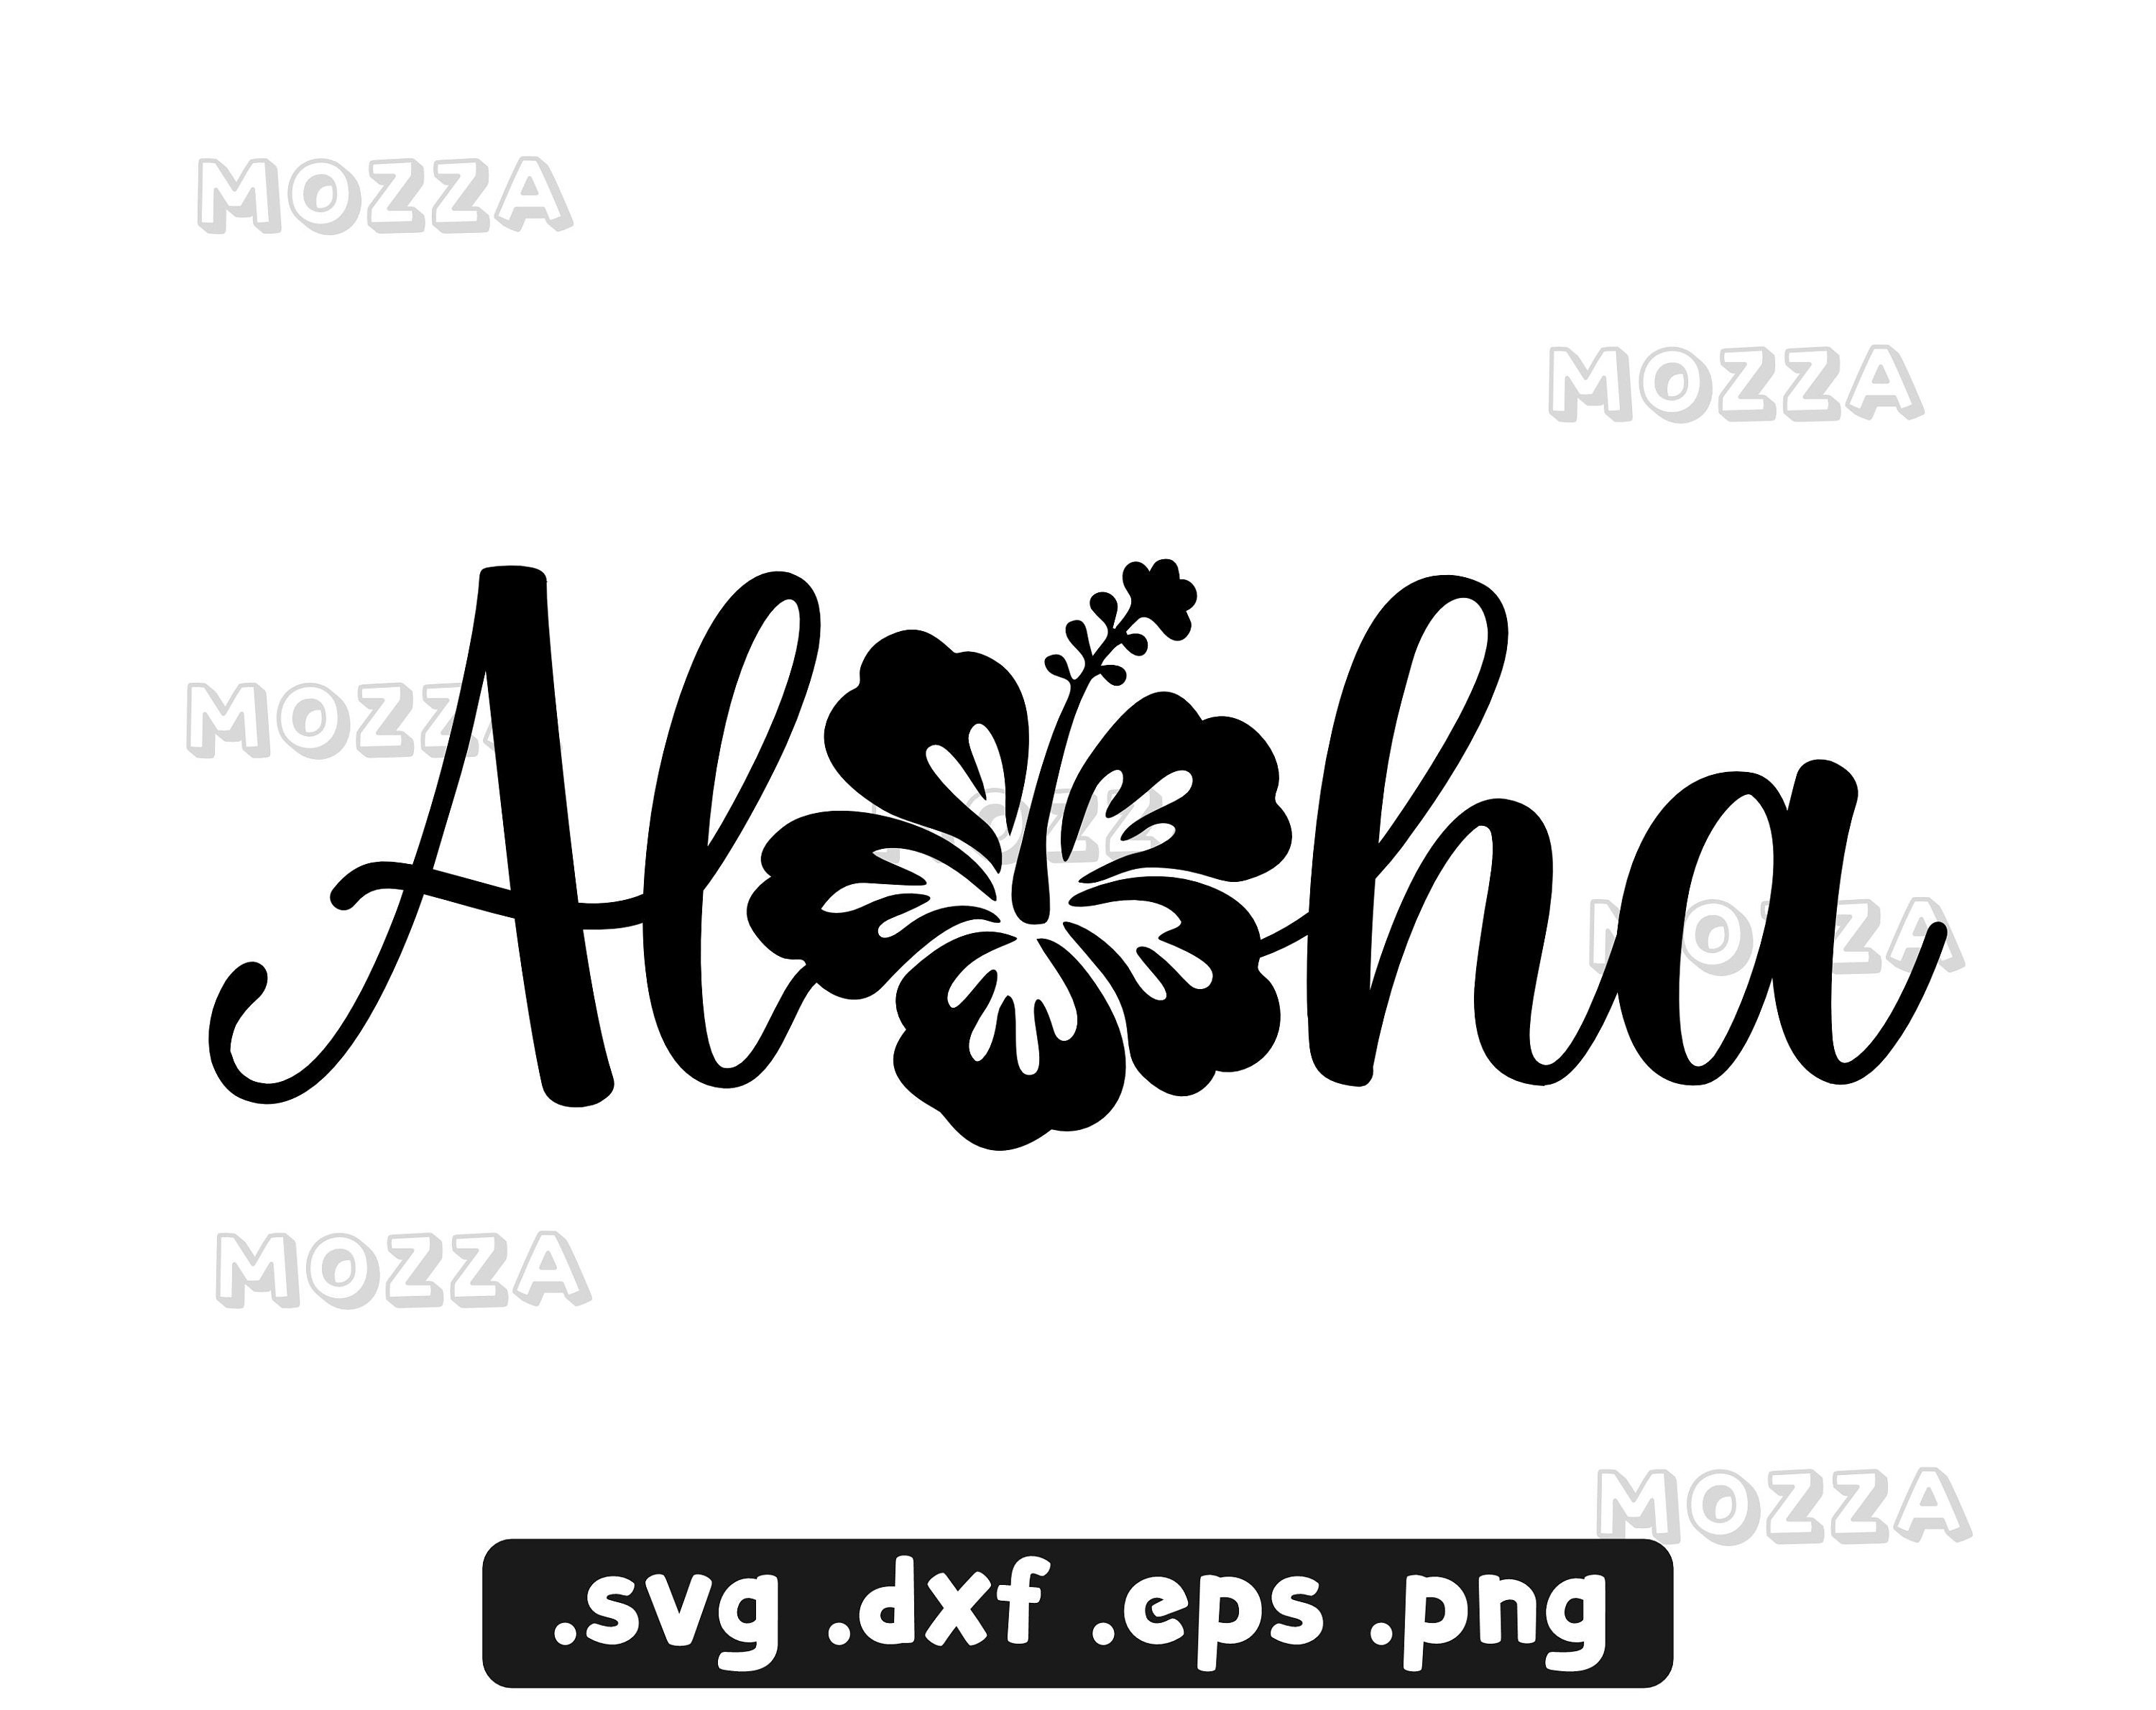 Beach Bum SVG - Retro Summer Shirt SVG - Hawaiian Flower